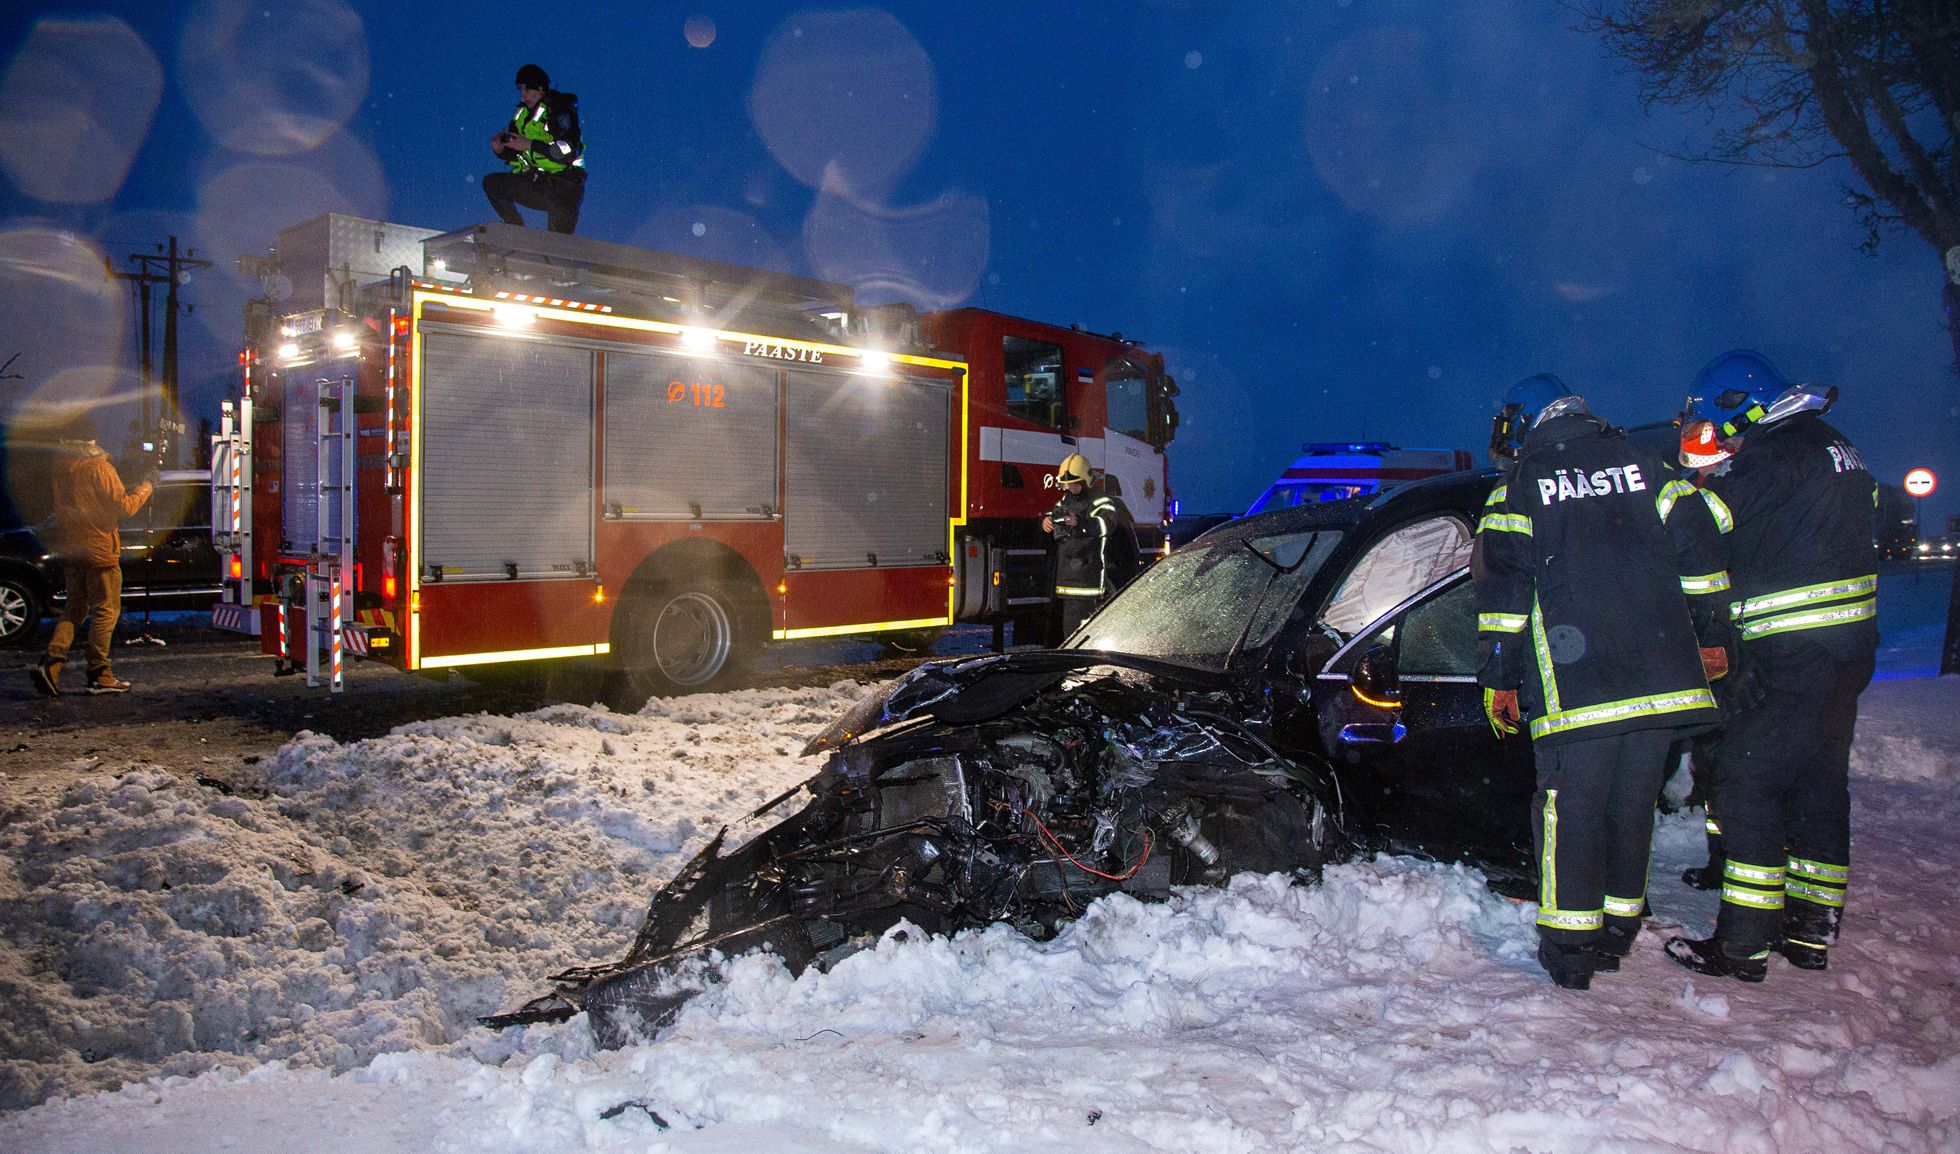 Õnnetuspaik Paide linnas Pärnu-Rakvere maanteel Sillaotsa ja Mäo vahel. Samas autos oli ka pere kolm last, kes kõik viidi haiglasse.